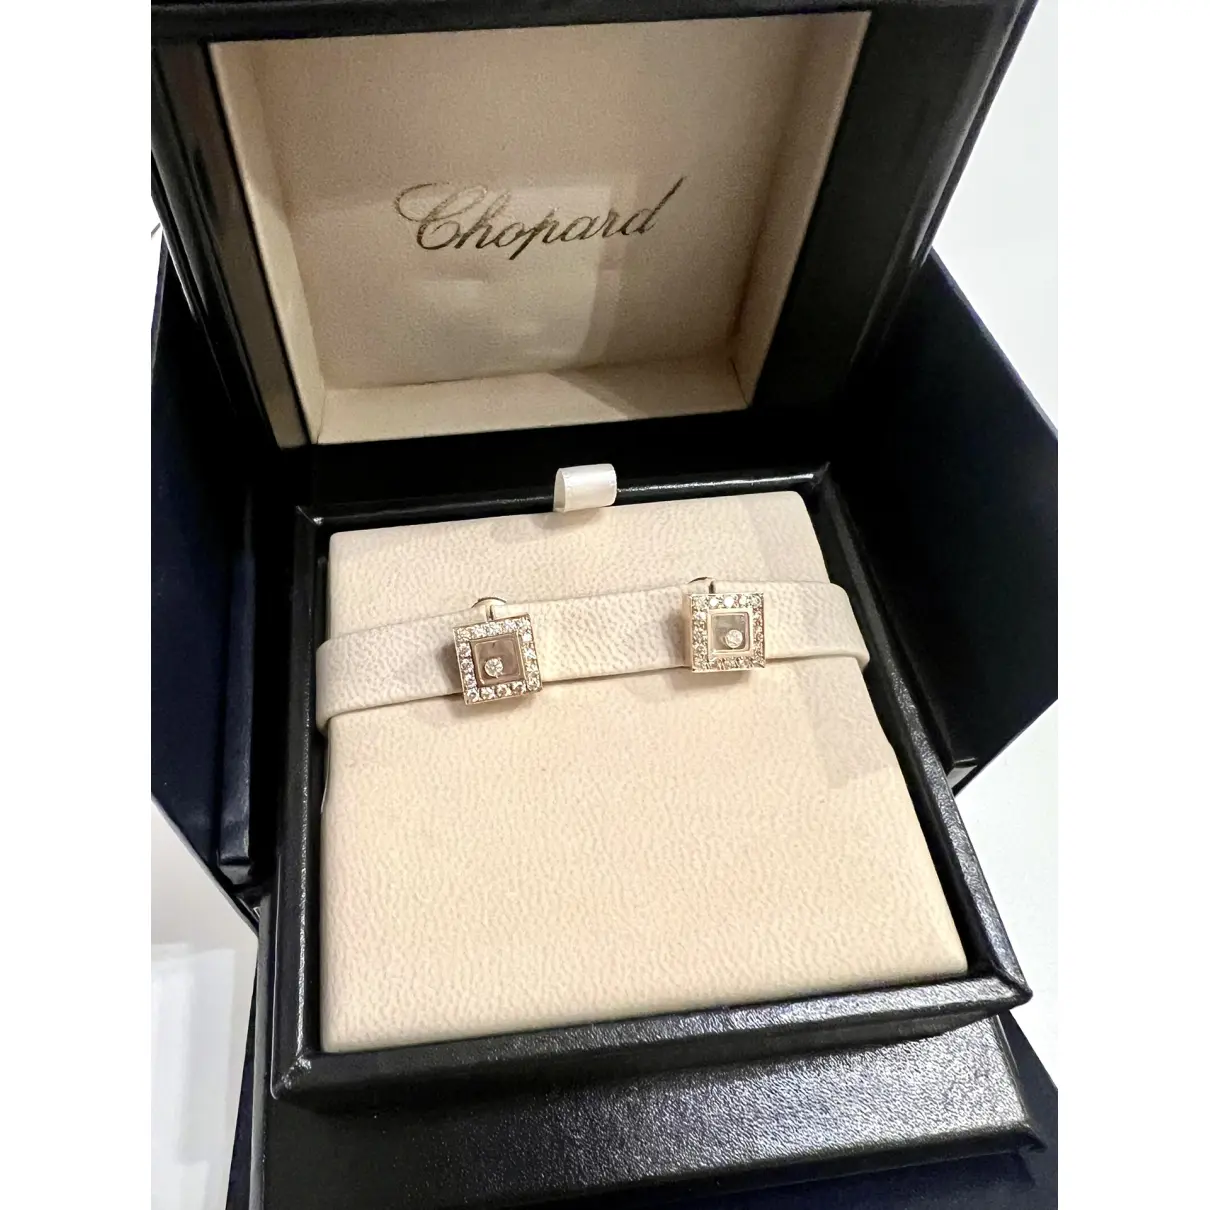 Buy Chopard Happy Diamonds yellow gold earrings online